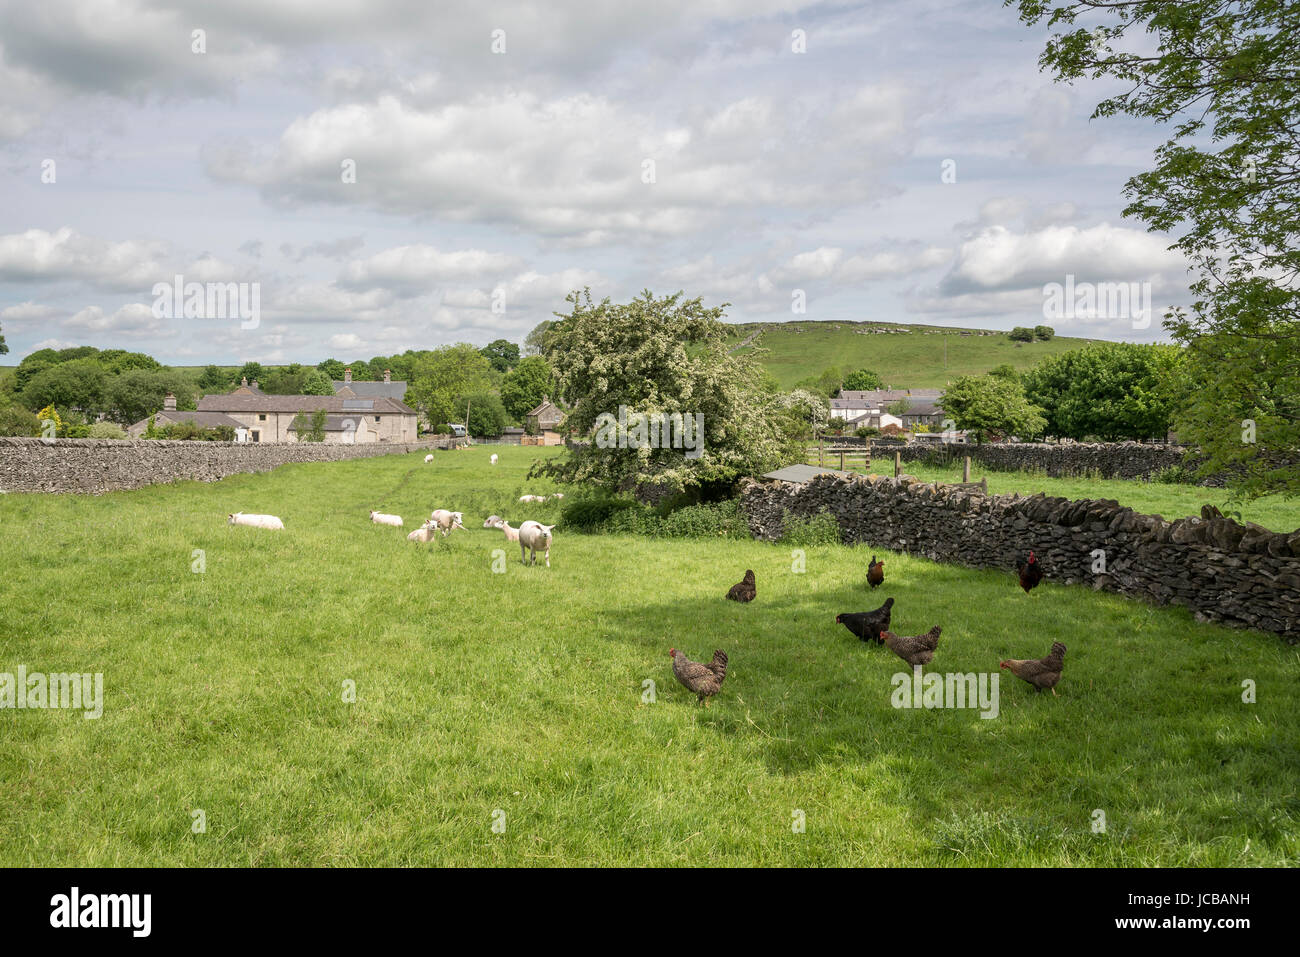 Il bestiame nei campi alla periferia di Litton, un villaggio nel distretto di Peak, Derbyshire, in Inghilterra. Foto Stock